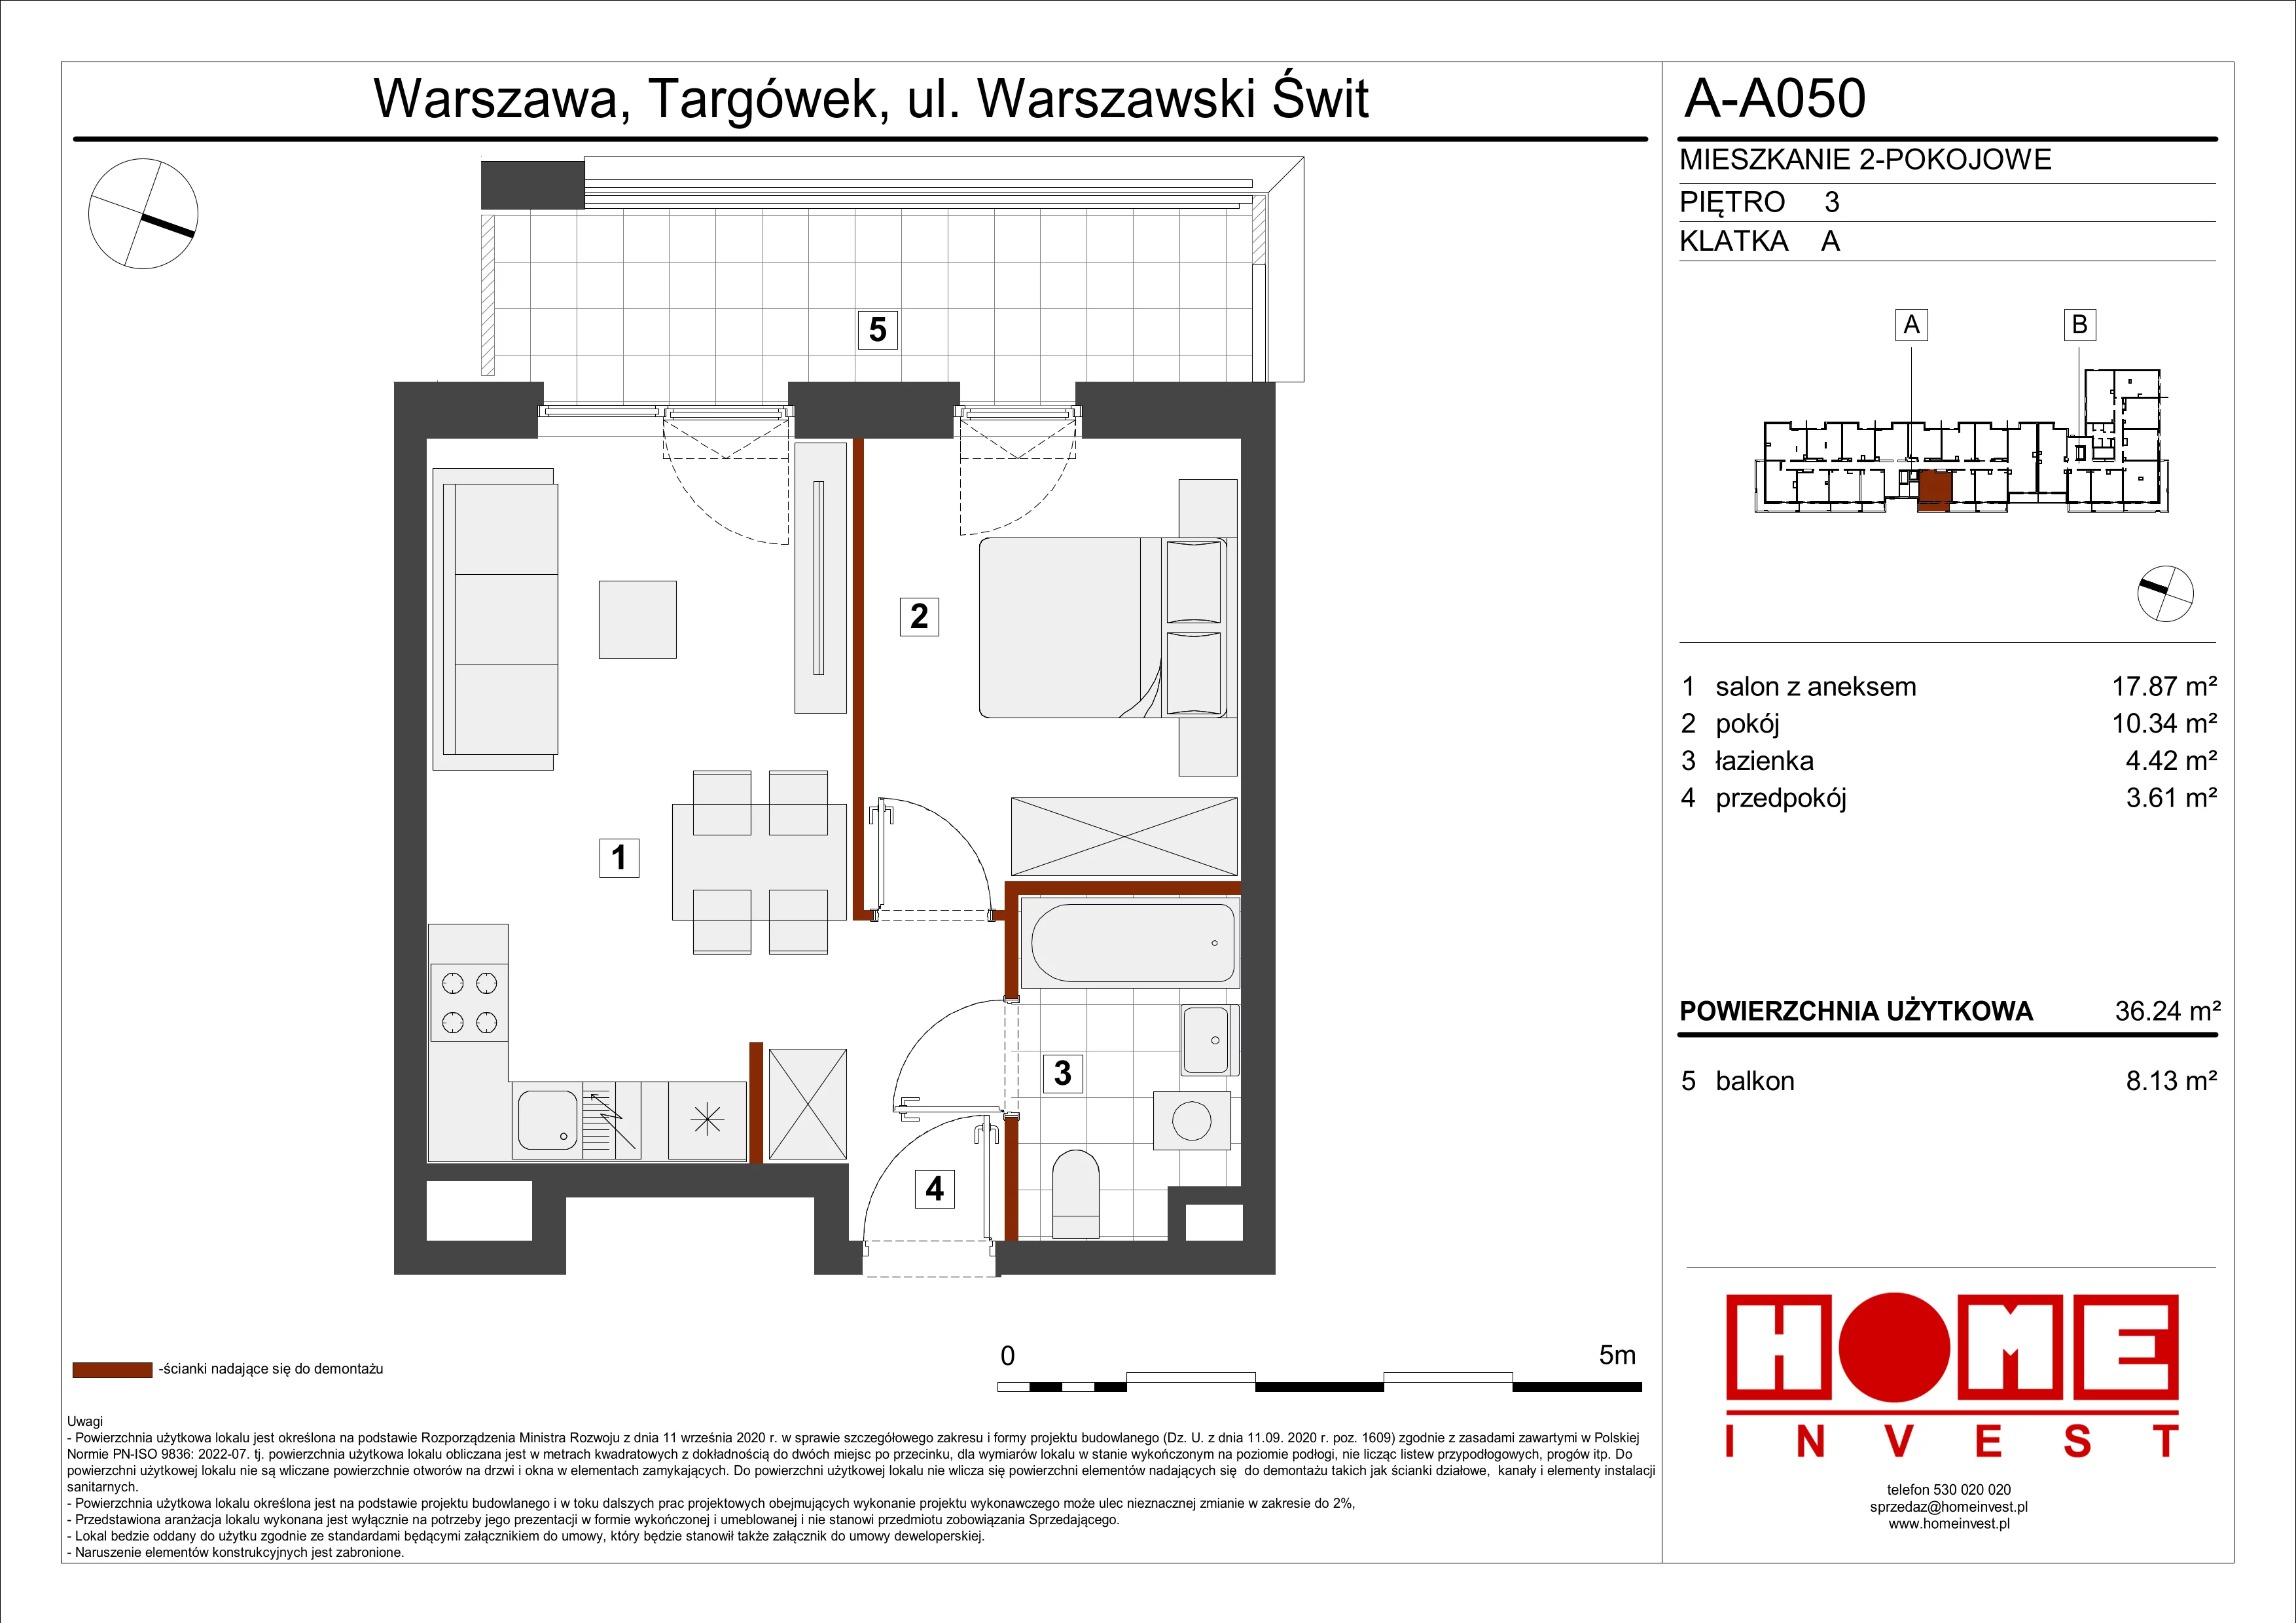 Mieszkanie 36,24 m², piętro 3, oferta nr A-A050, Warszawski Świt, Warszawa, Targówek, Bródno, ul. Warszawski Świt 5